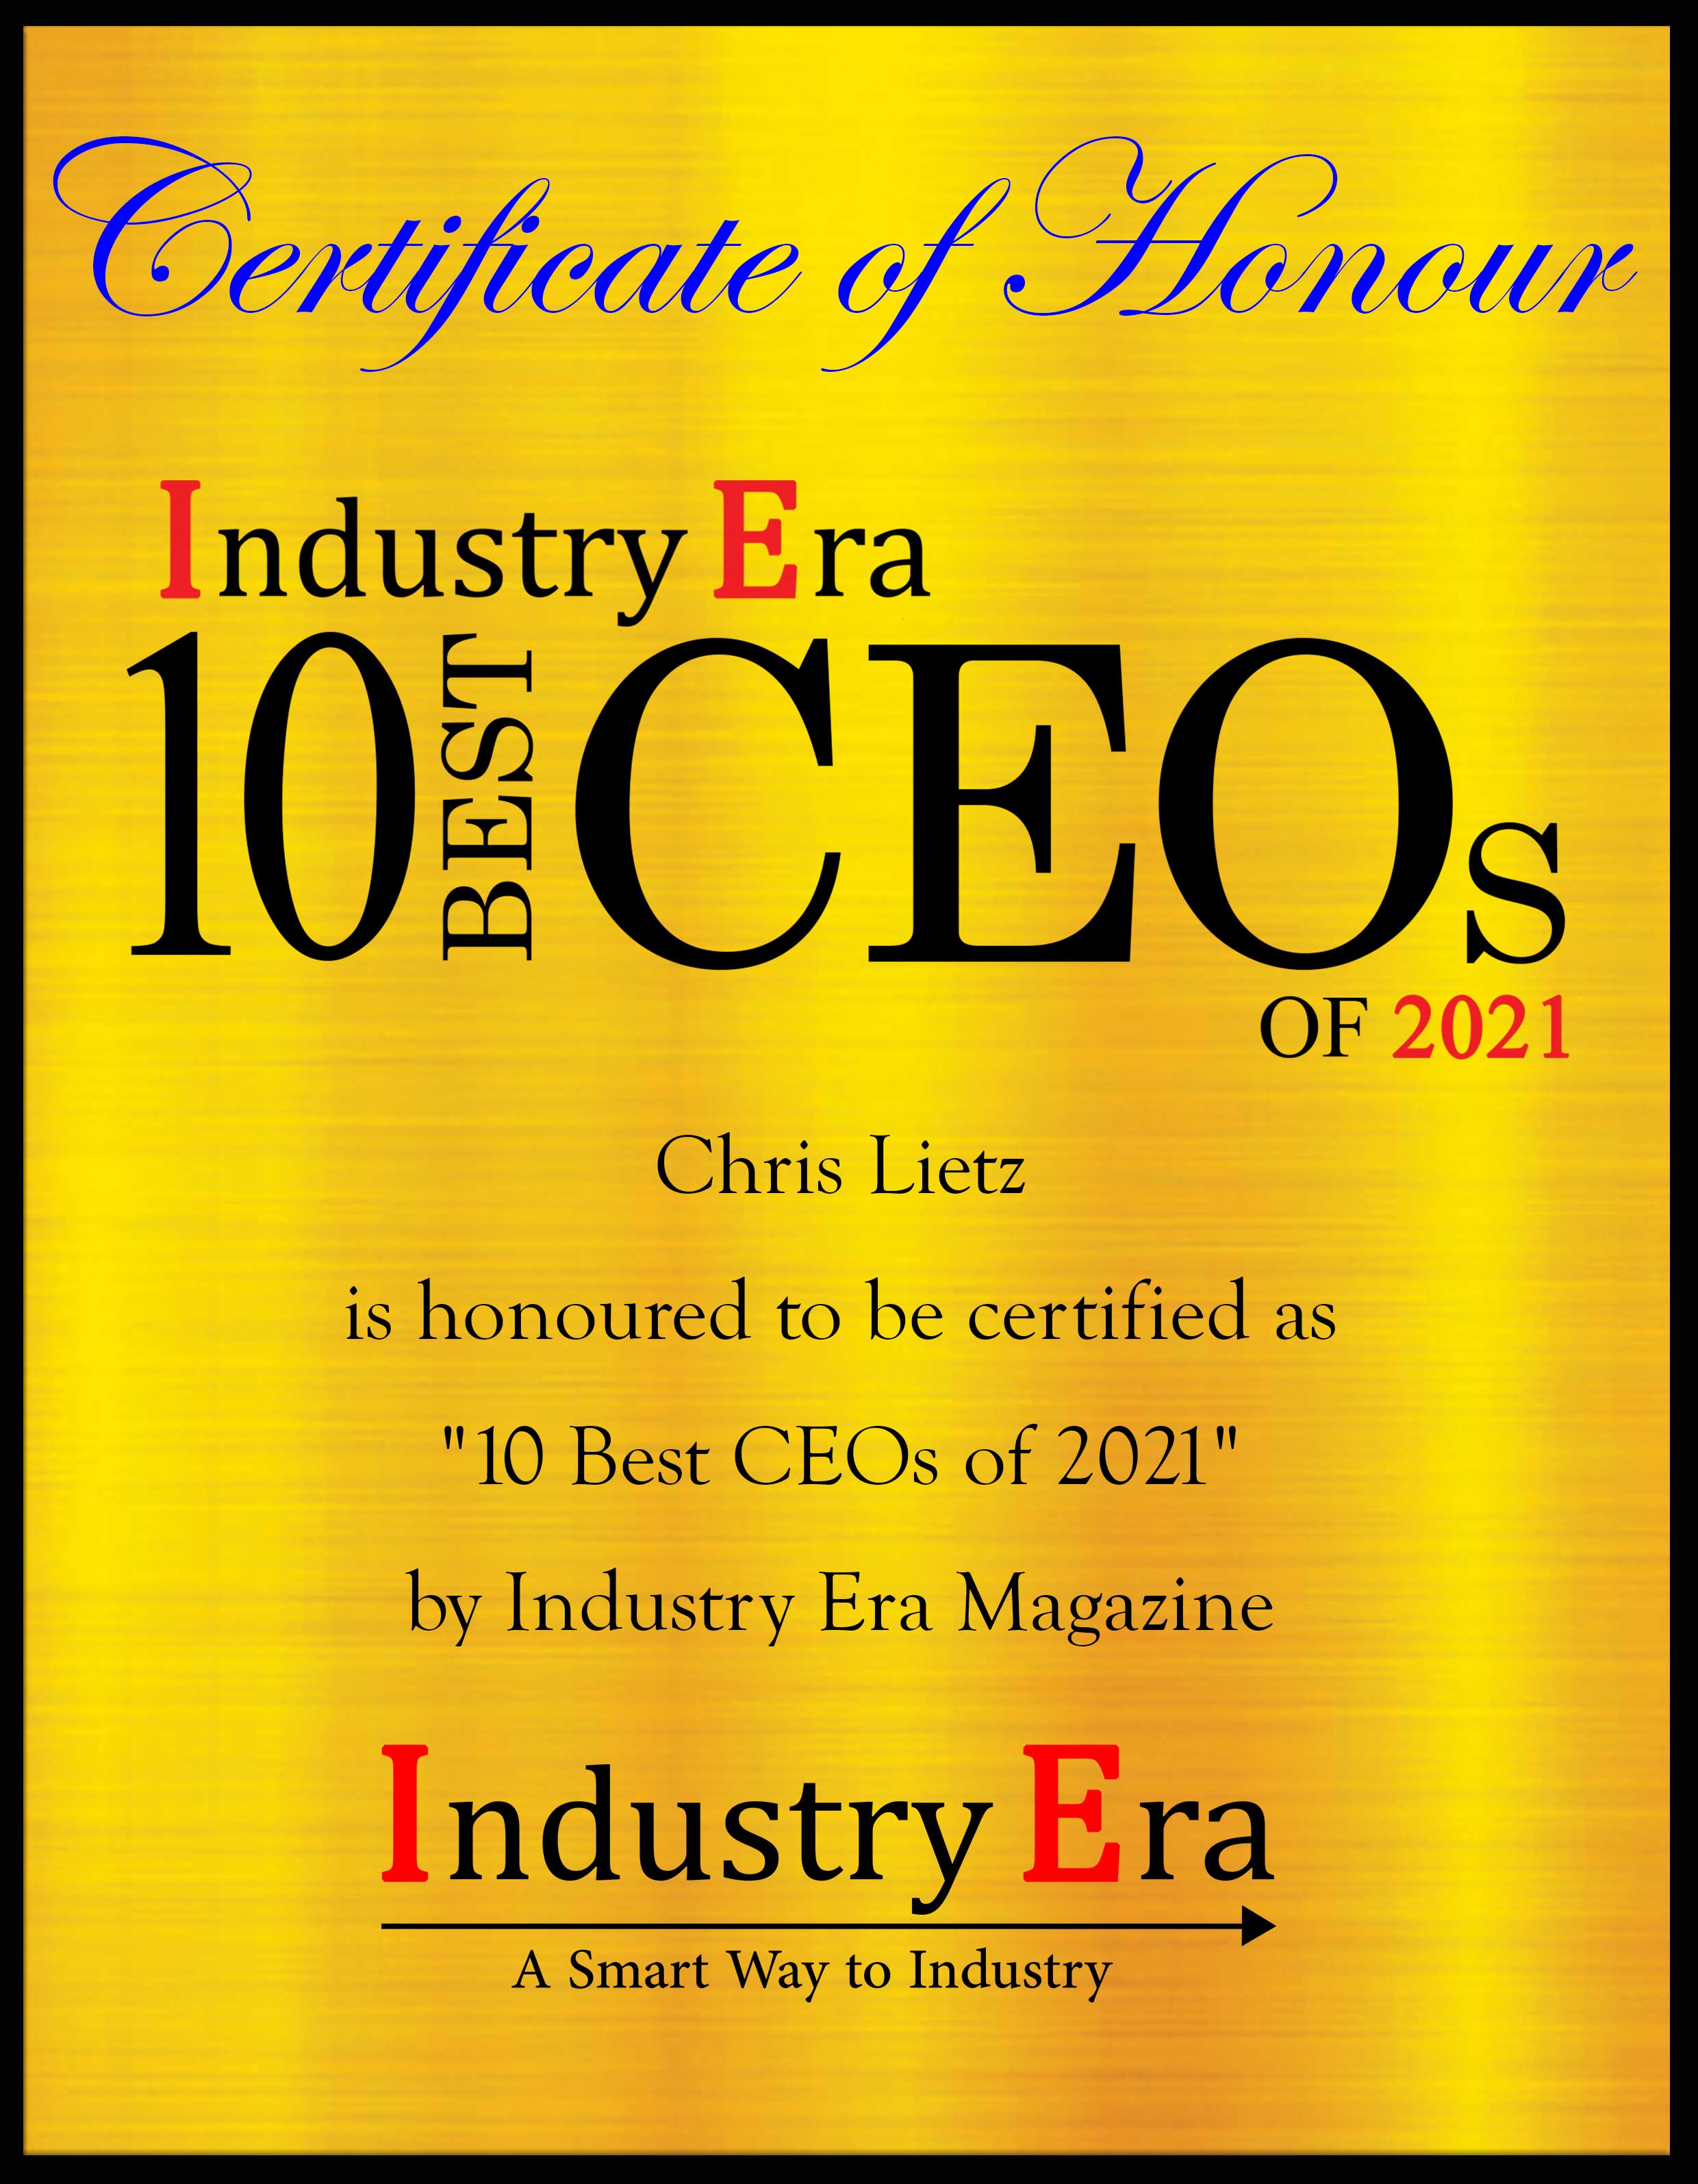 Chris Lietz, CEO of Data-Tech Certificate